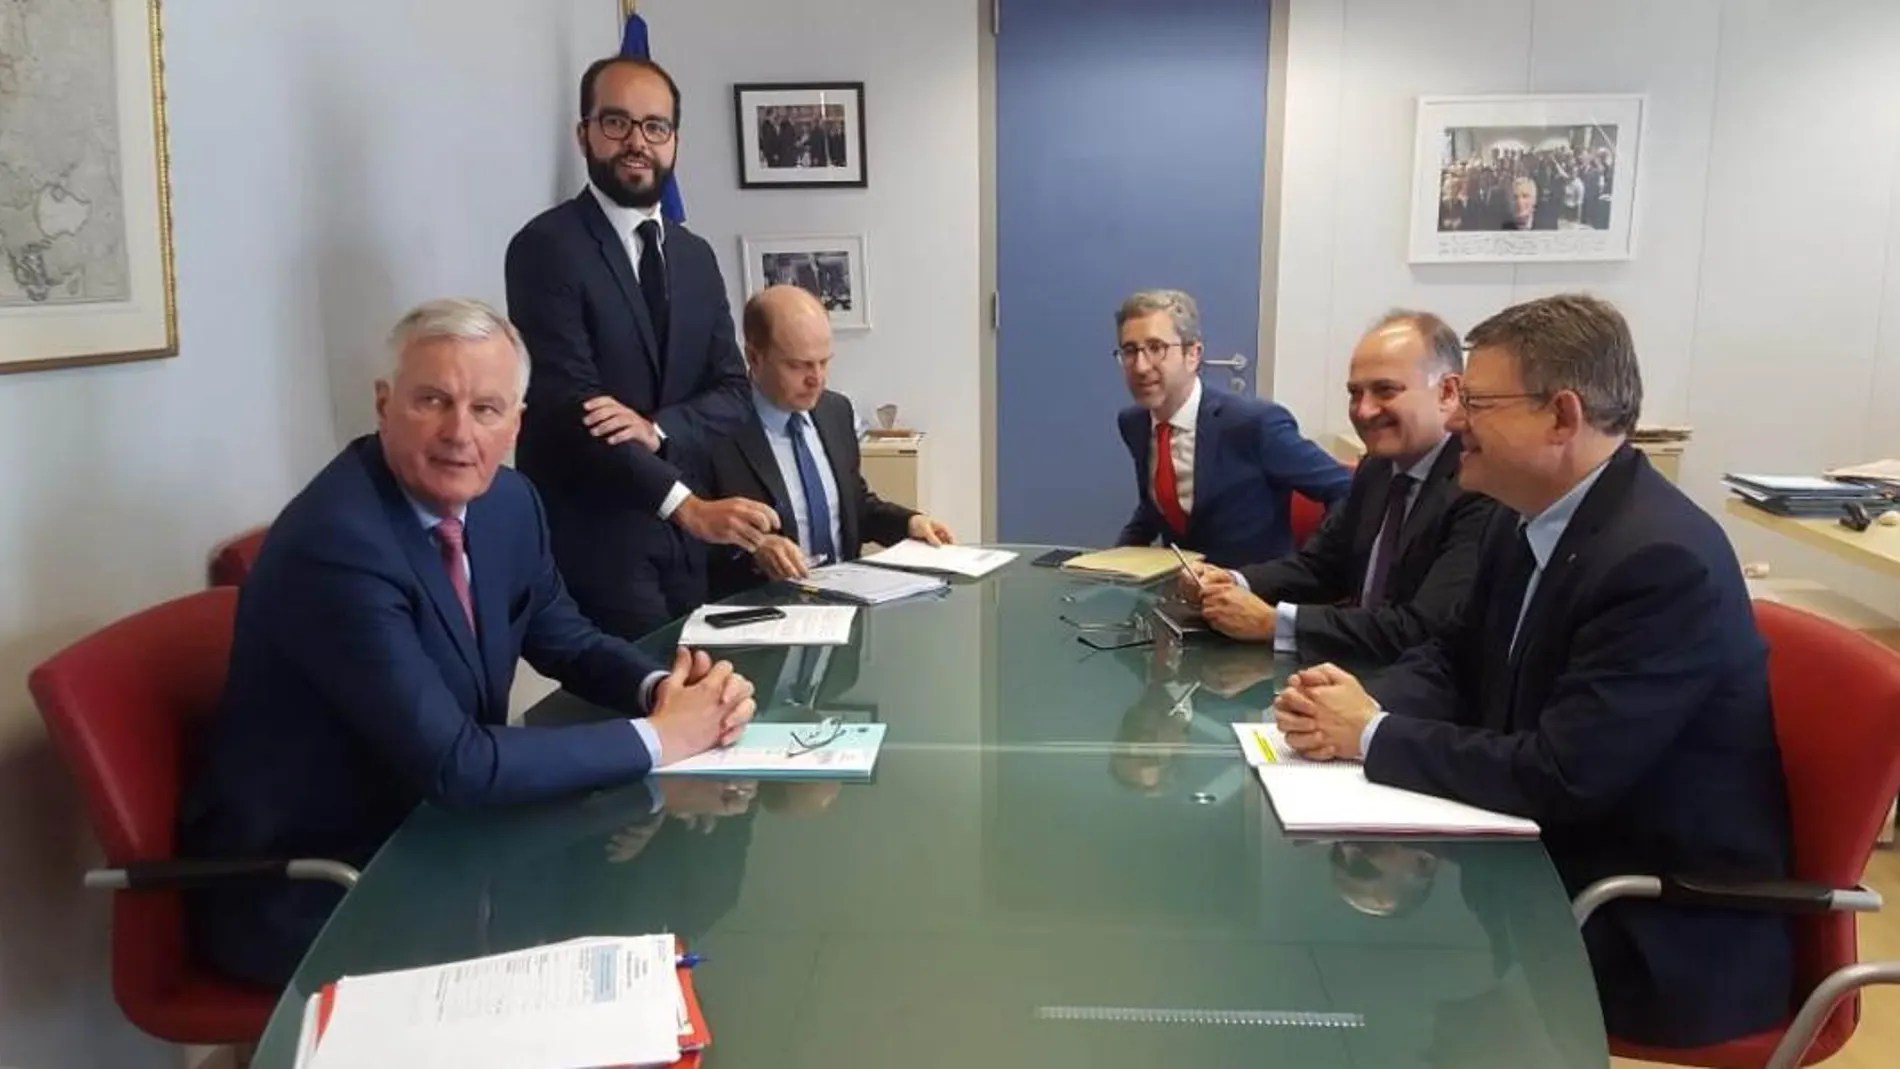 La Razón. El presidente de la Generalitat Valenciana, Ximo Puig, durante la reunión que mantuvo ayer con el jefe del equipo negociador de la Comisión Europea para la salida del Reino Unido de la Unión Europea, Michael Barnier